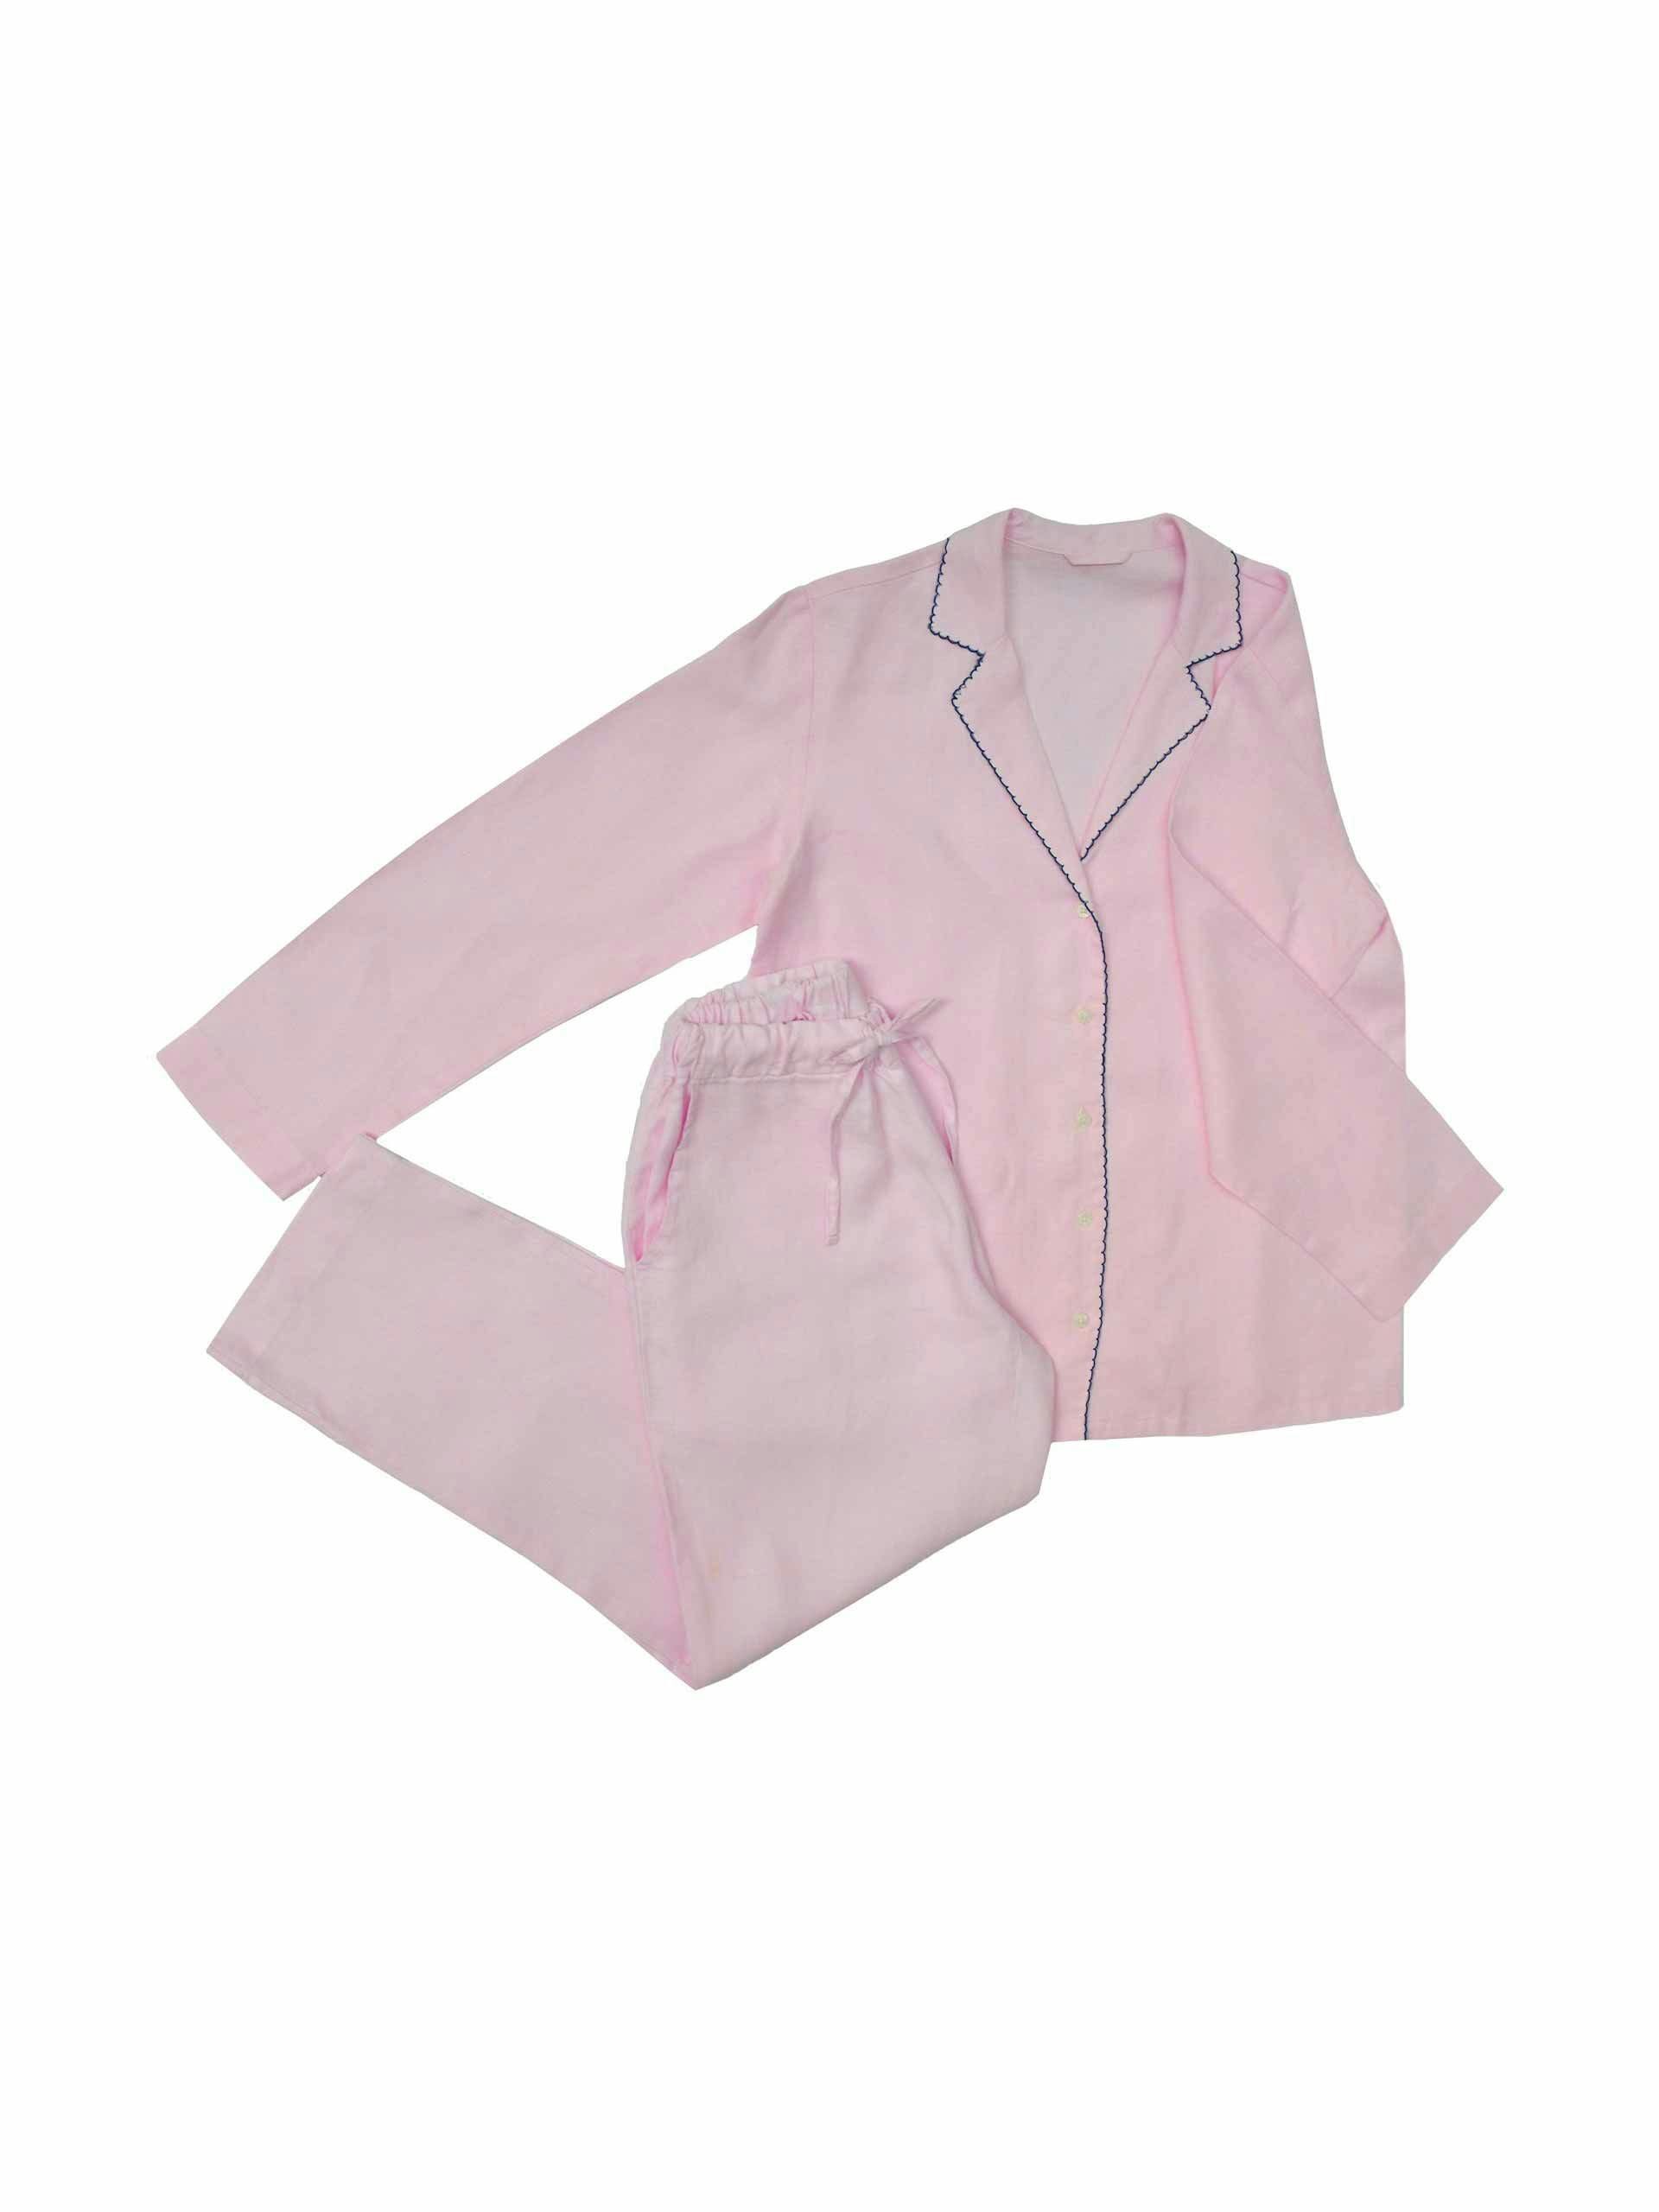 Pink hemp pyjama set